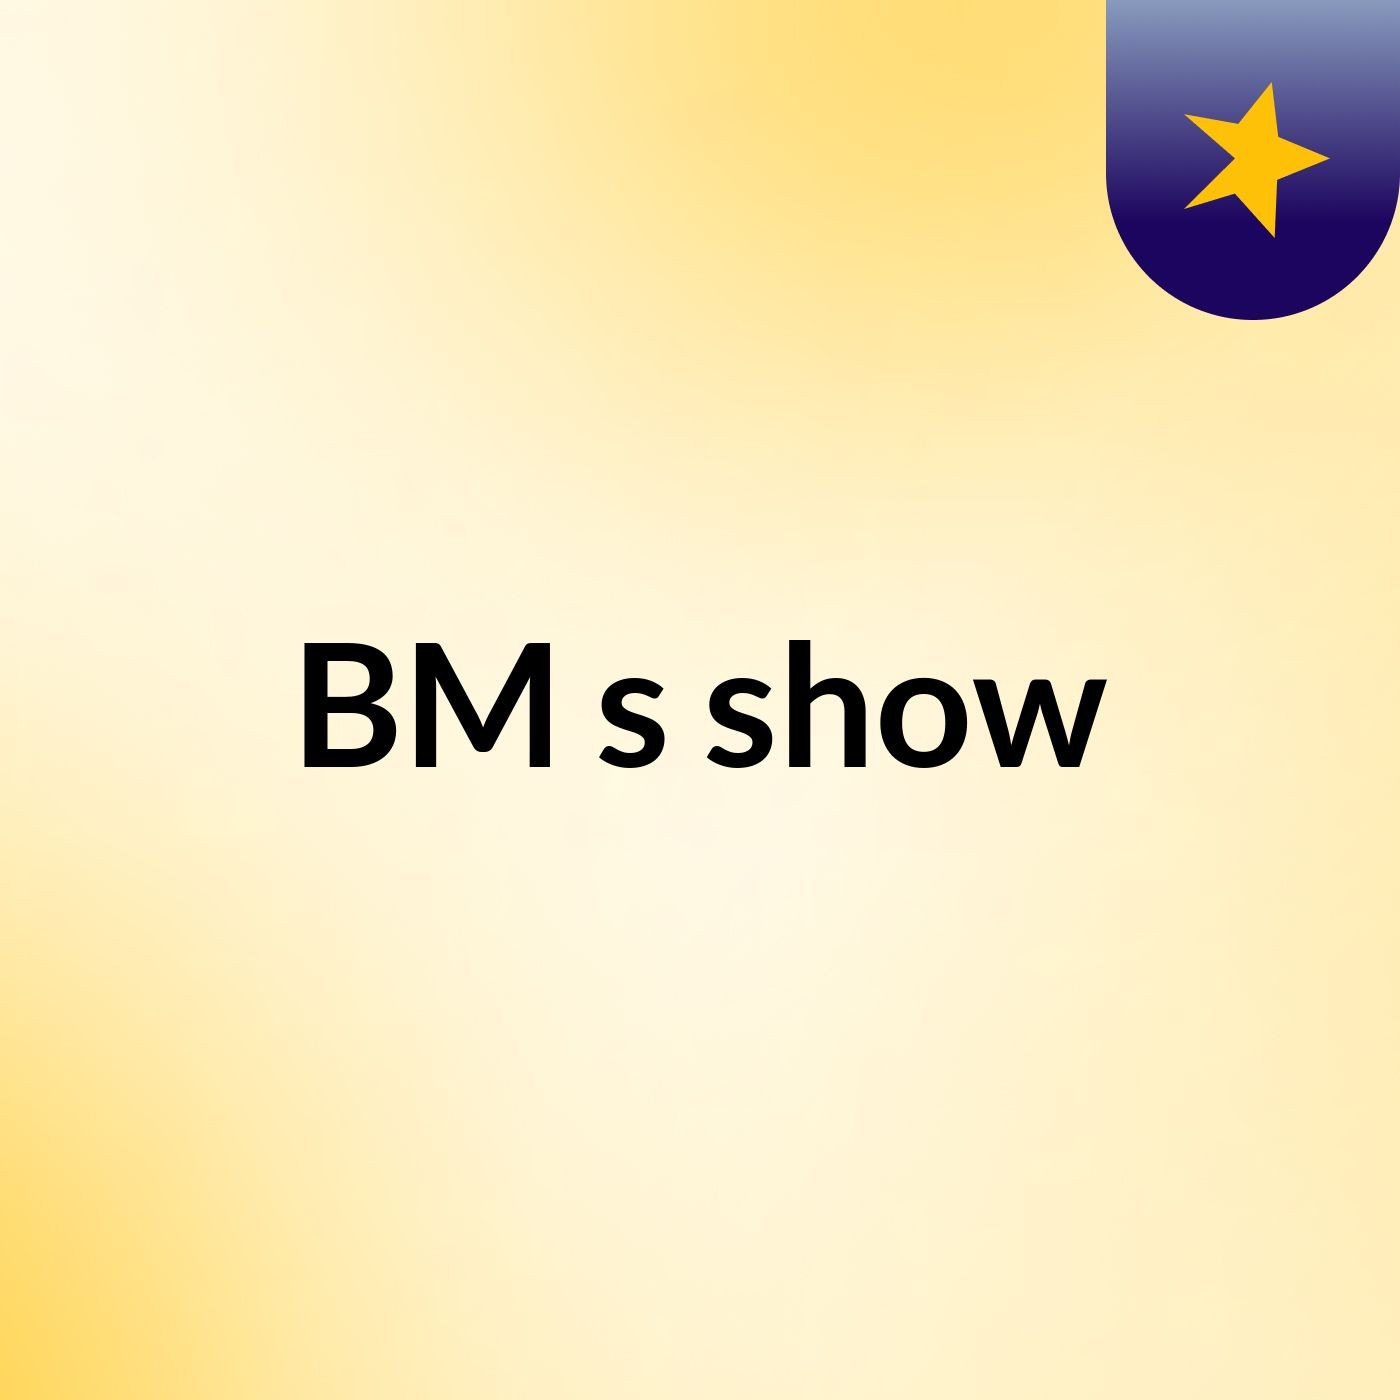 BM's show